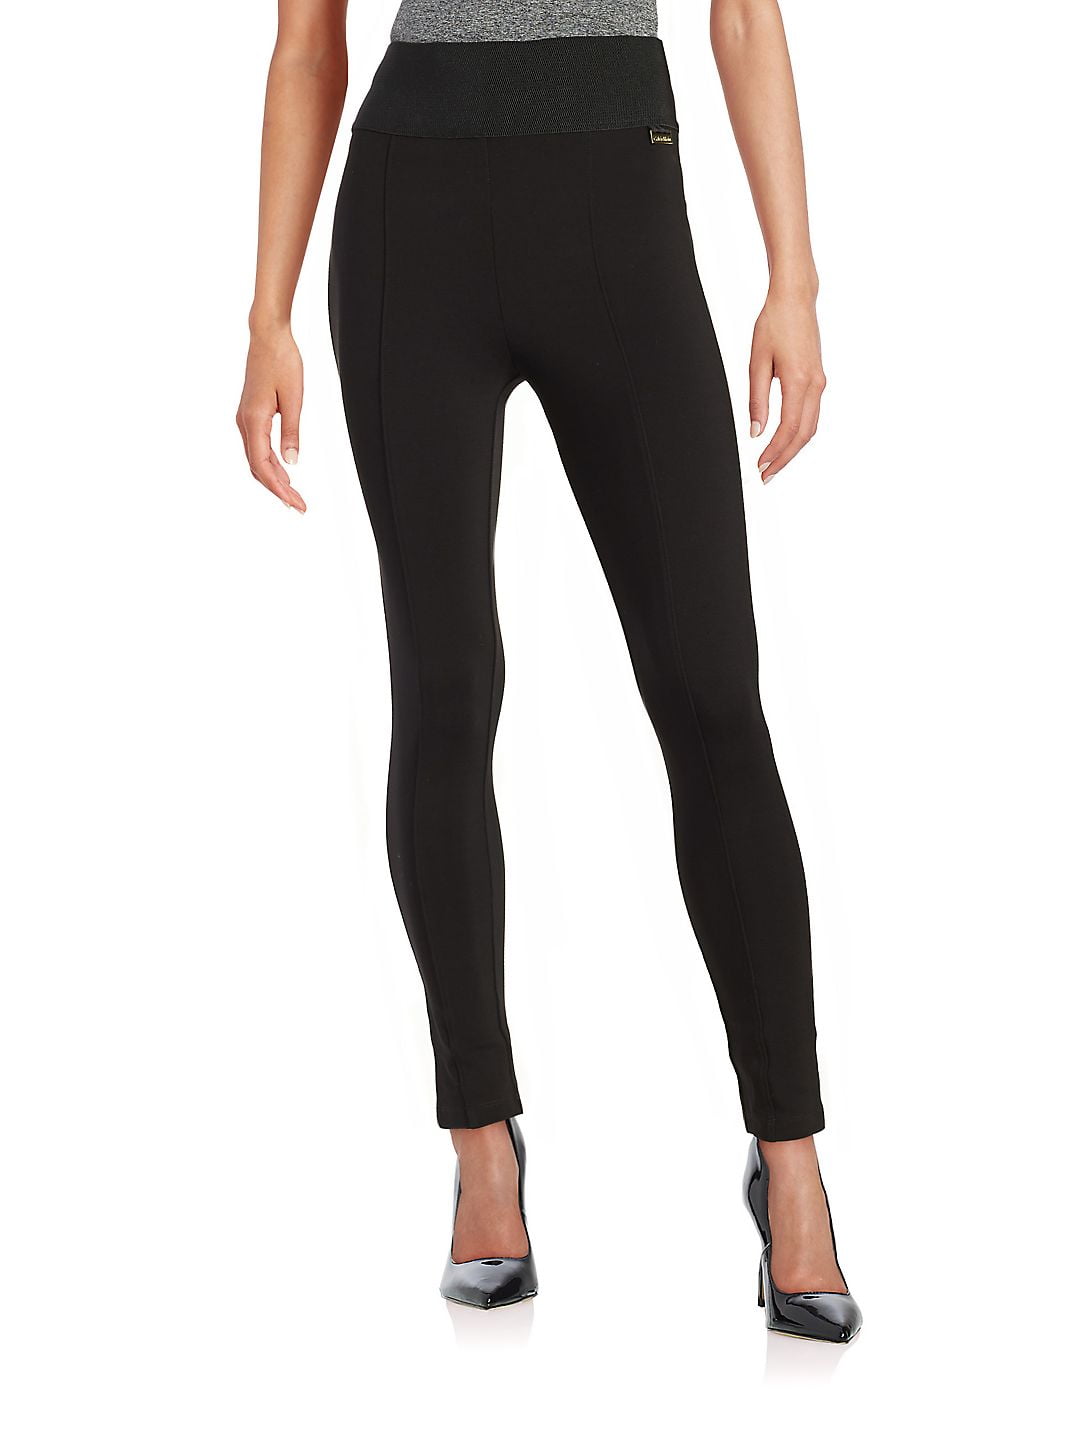 Calvin Klein Womens Ponte Power Stretch Dress Pants Black M 